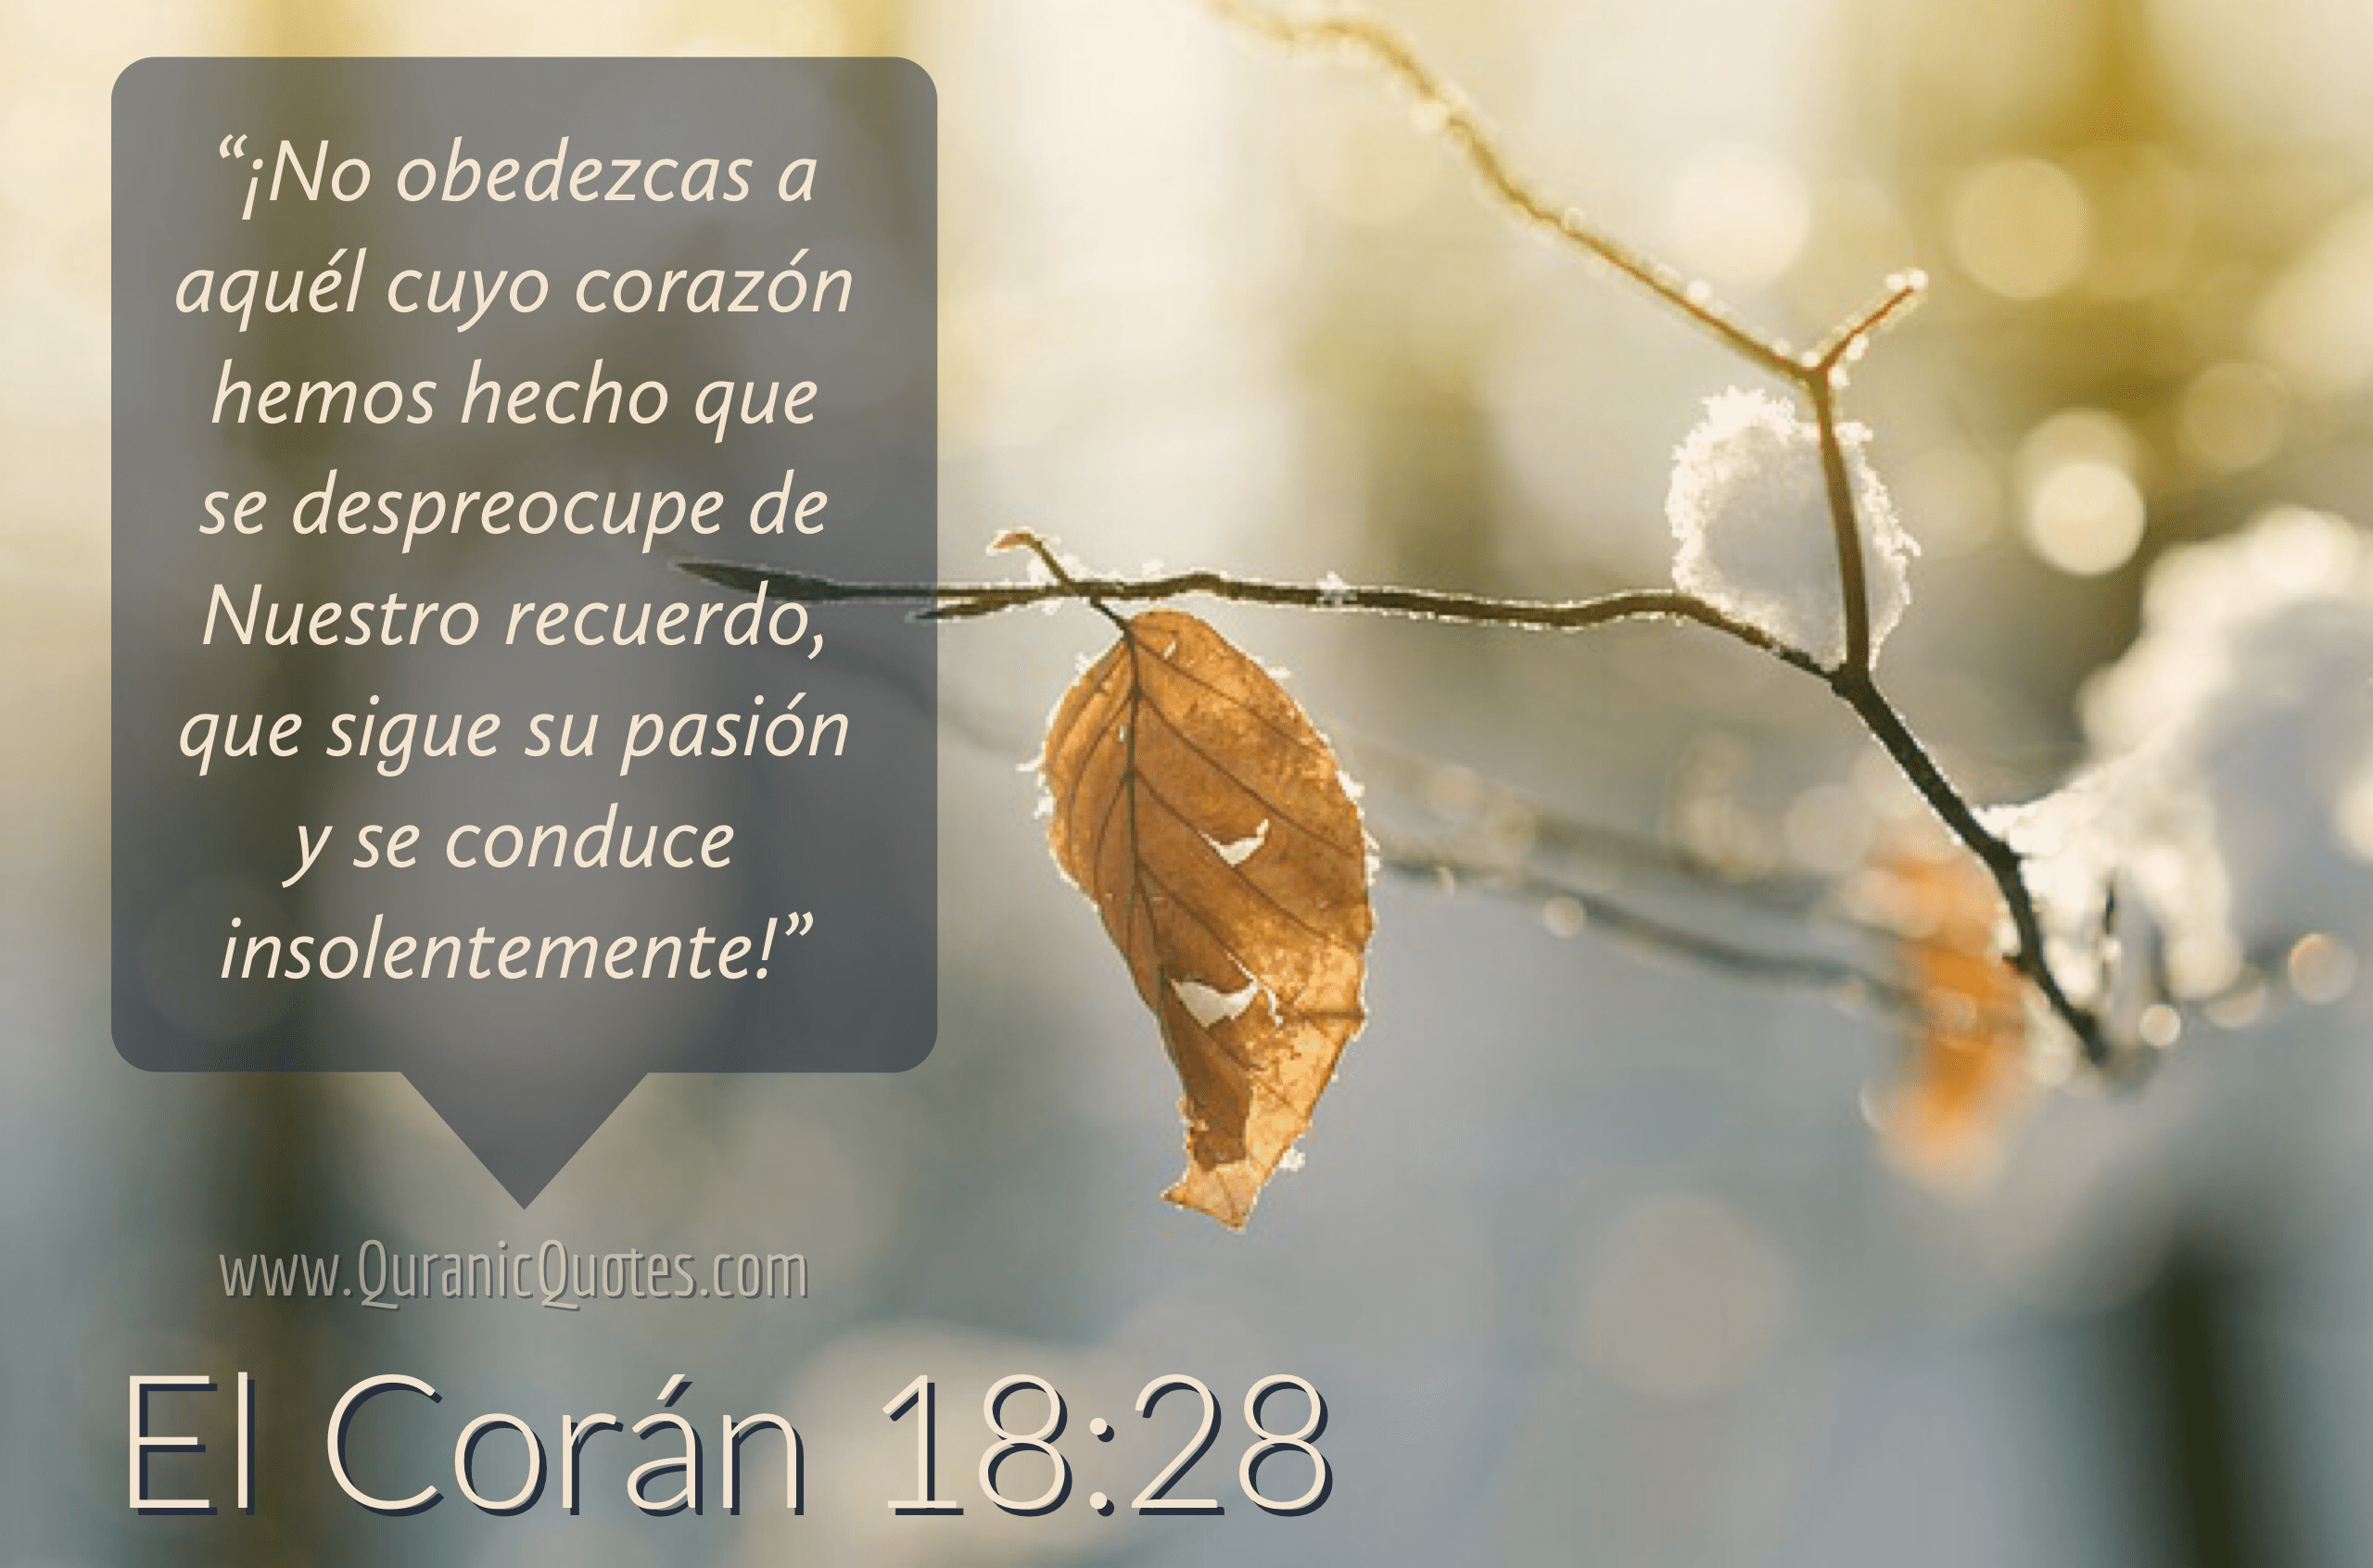 Quranic Quotes Español #214